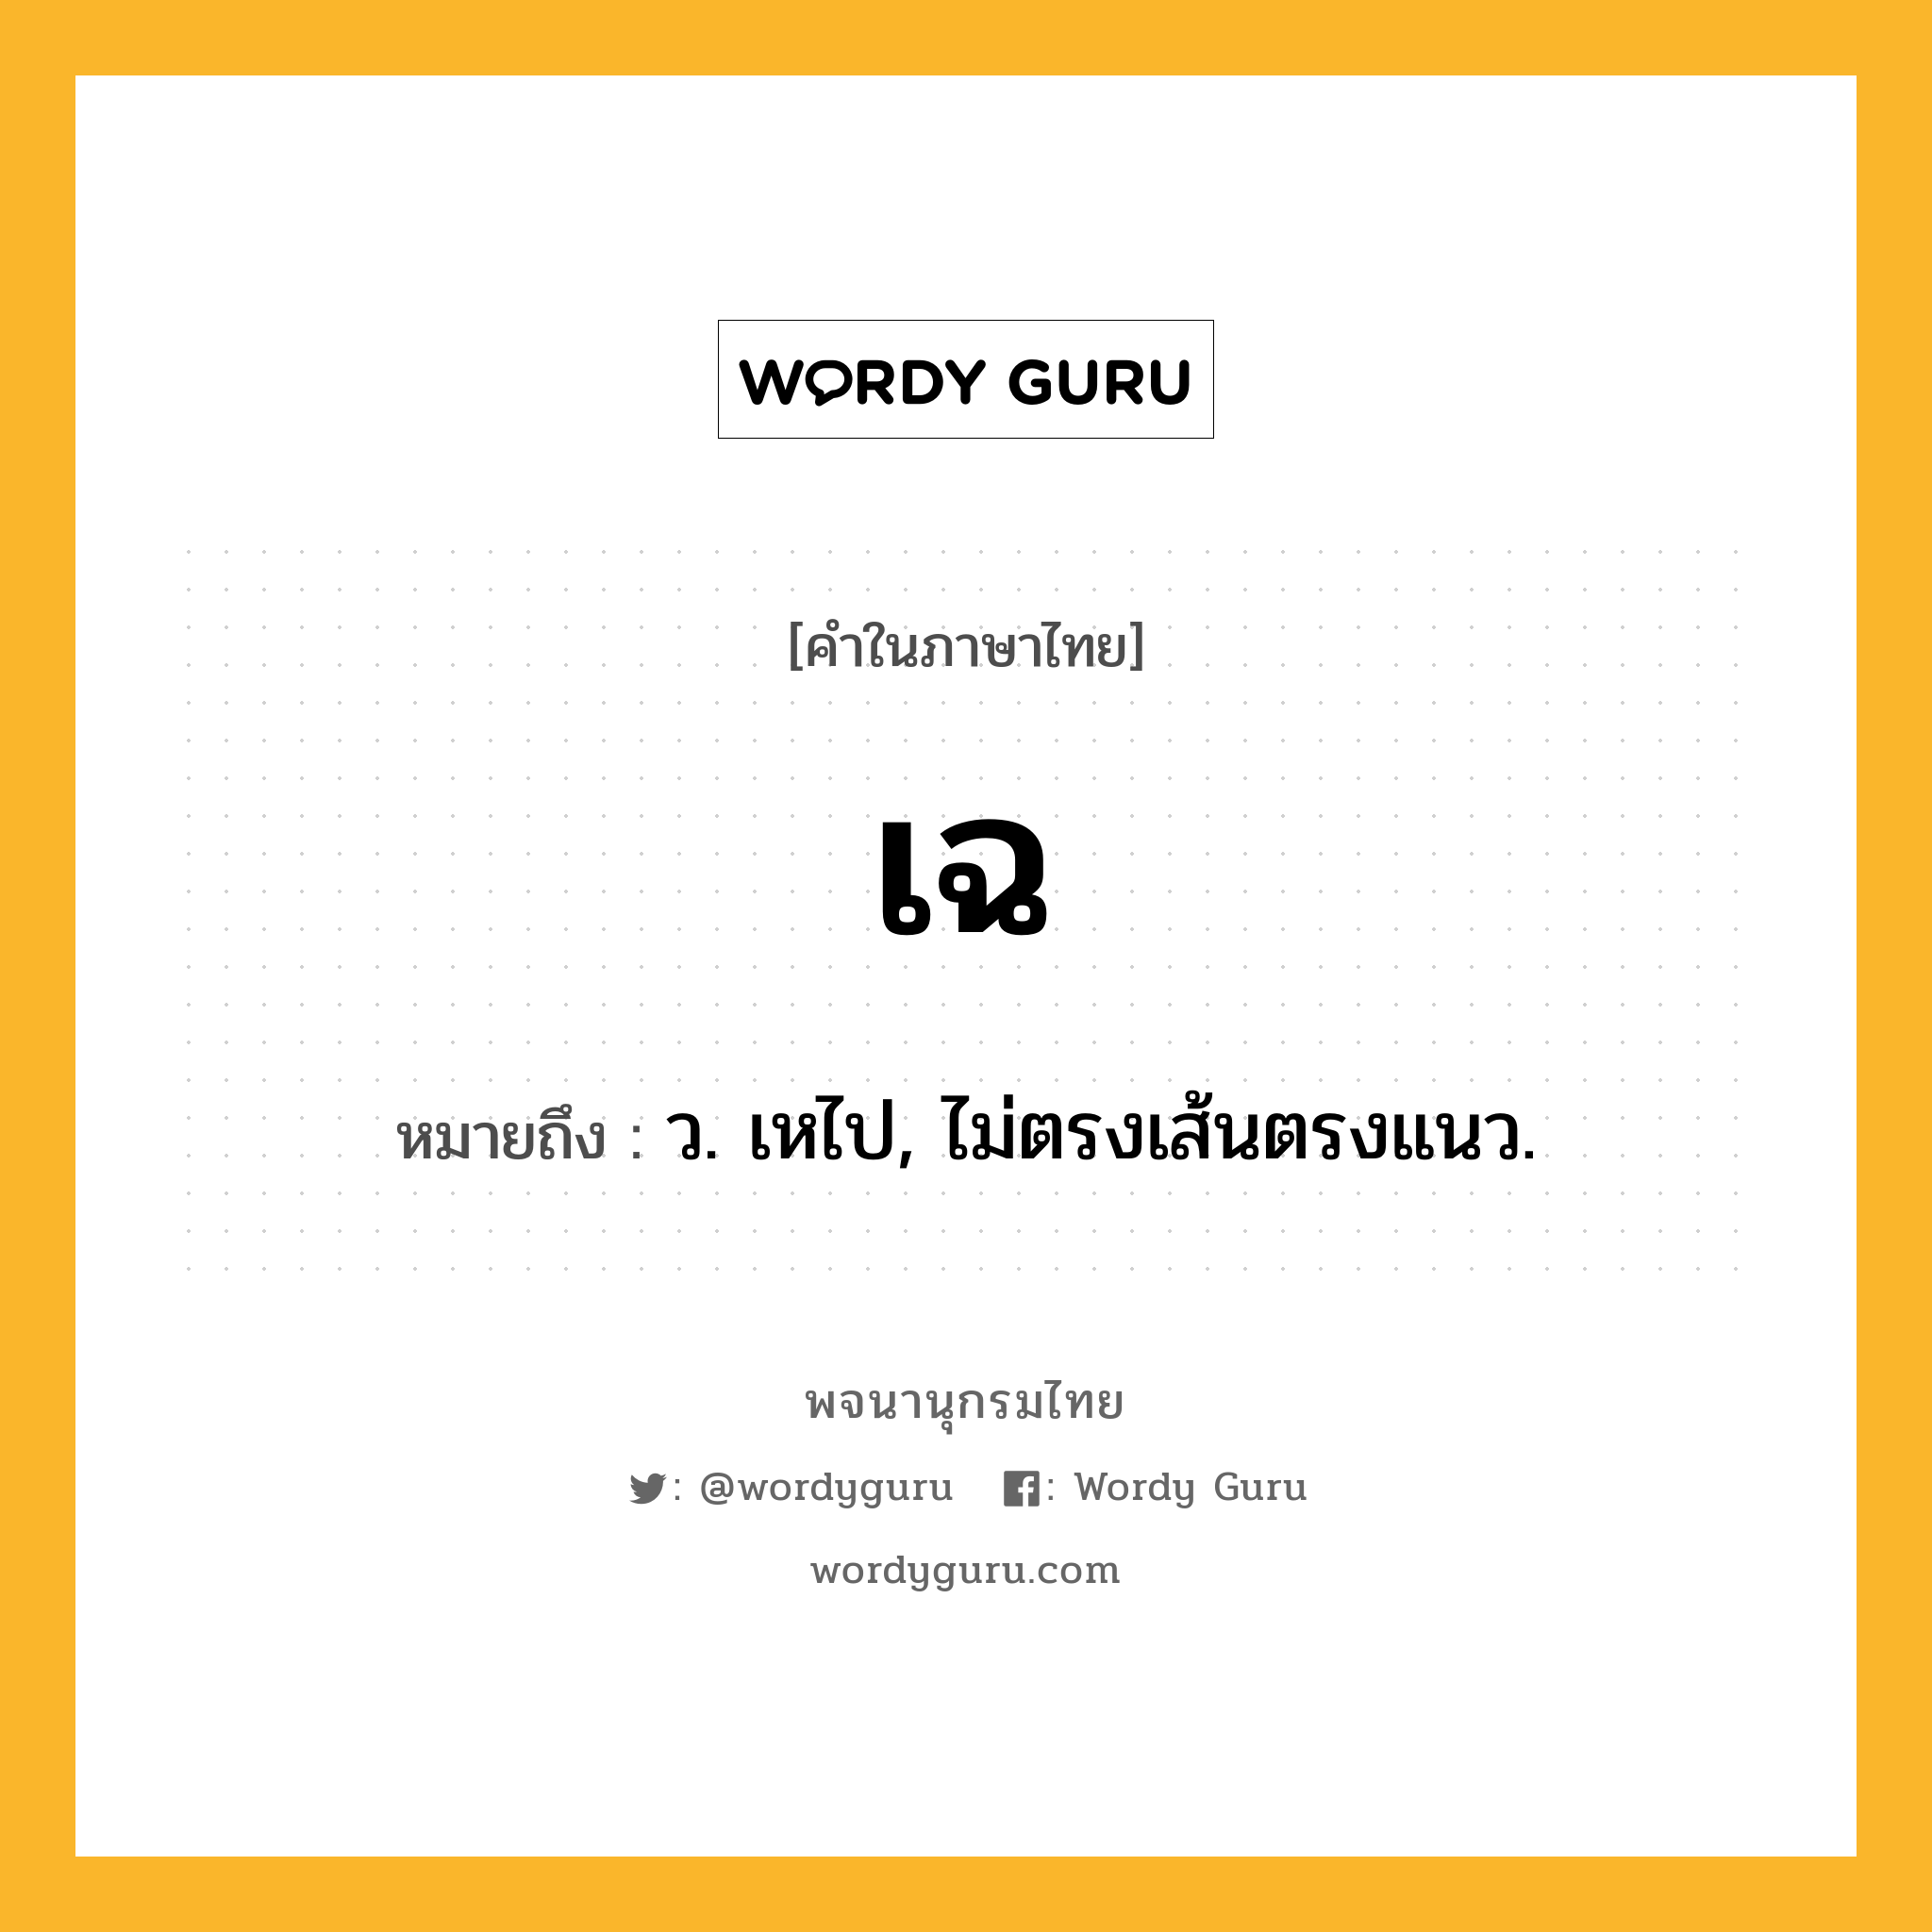 เฉ หมายถึงอะไร?, คำในภาษาไทย เฉ หมายถึง ว. เหไป, ไม่ตรงเส้นตรงแนว.